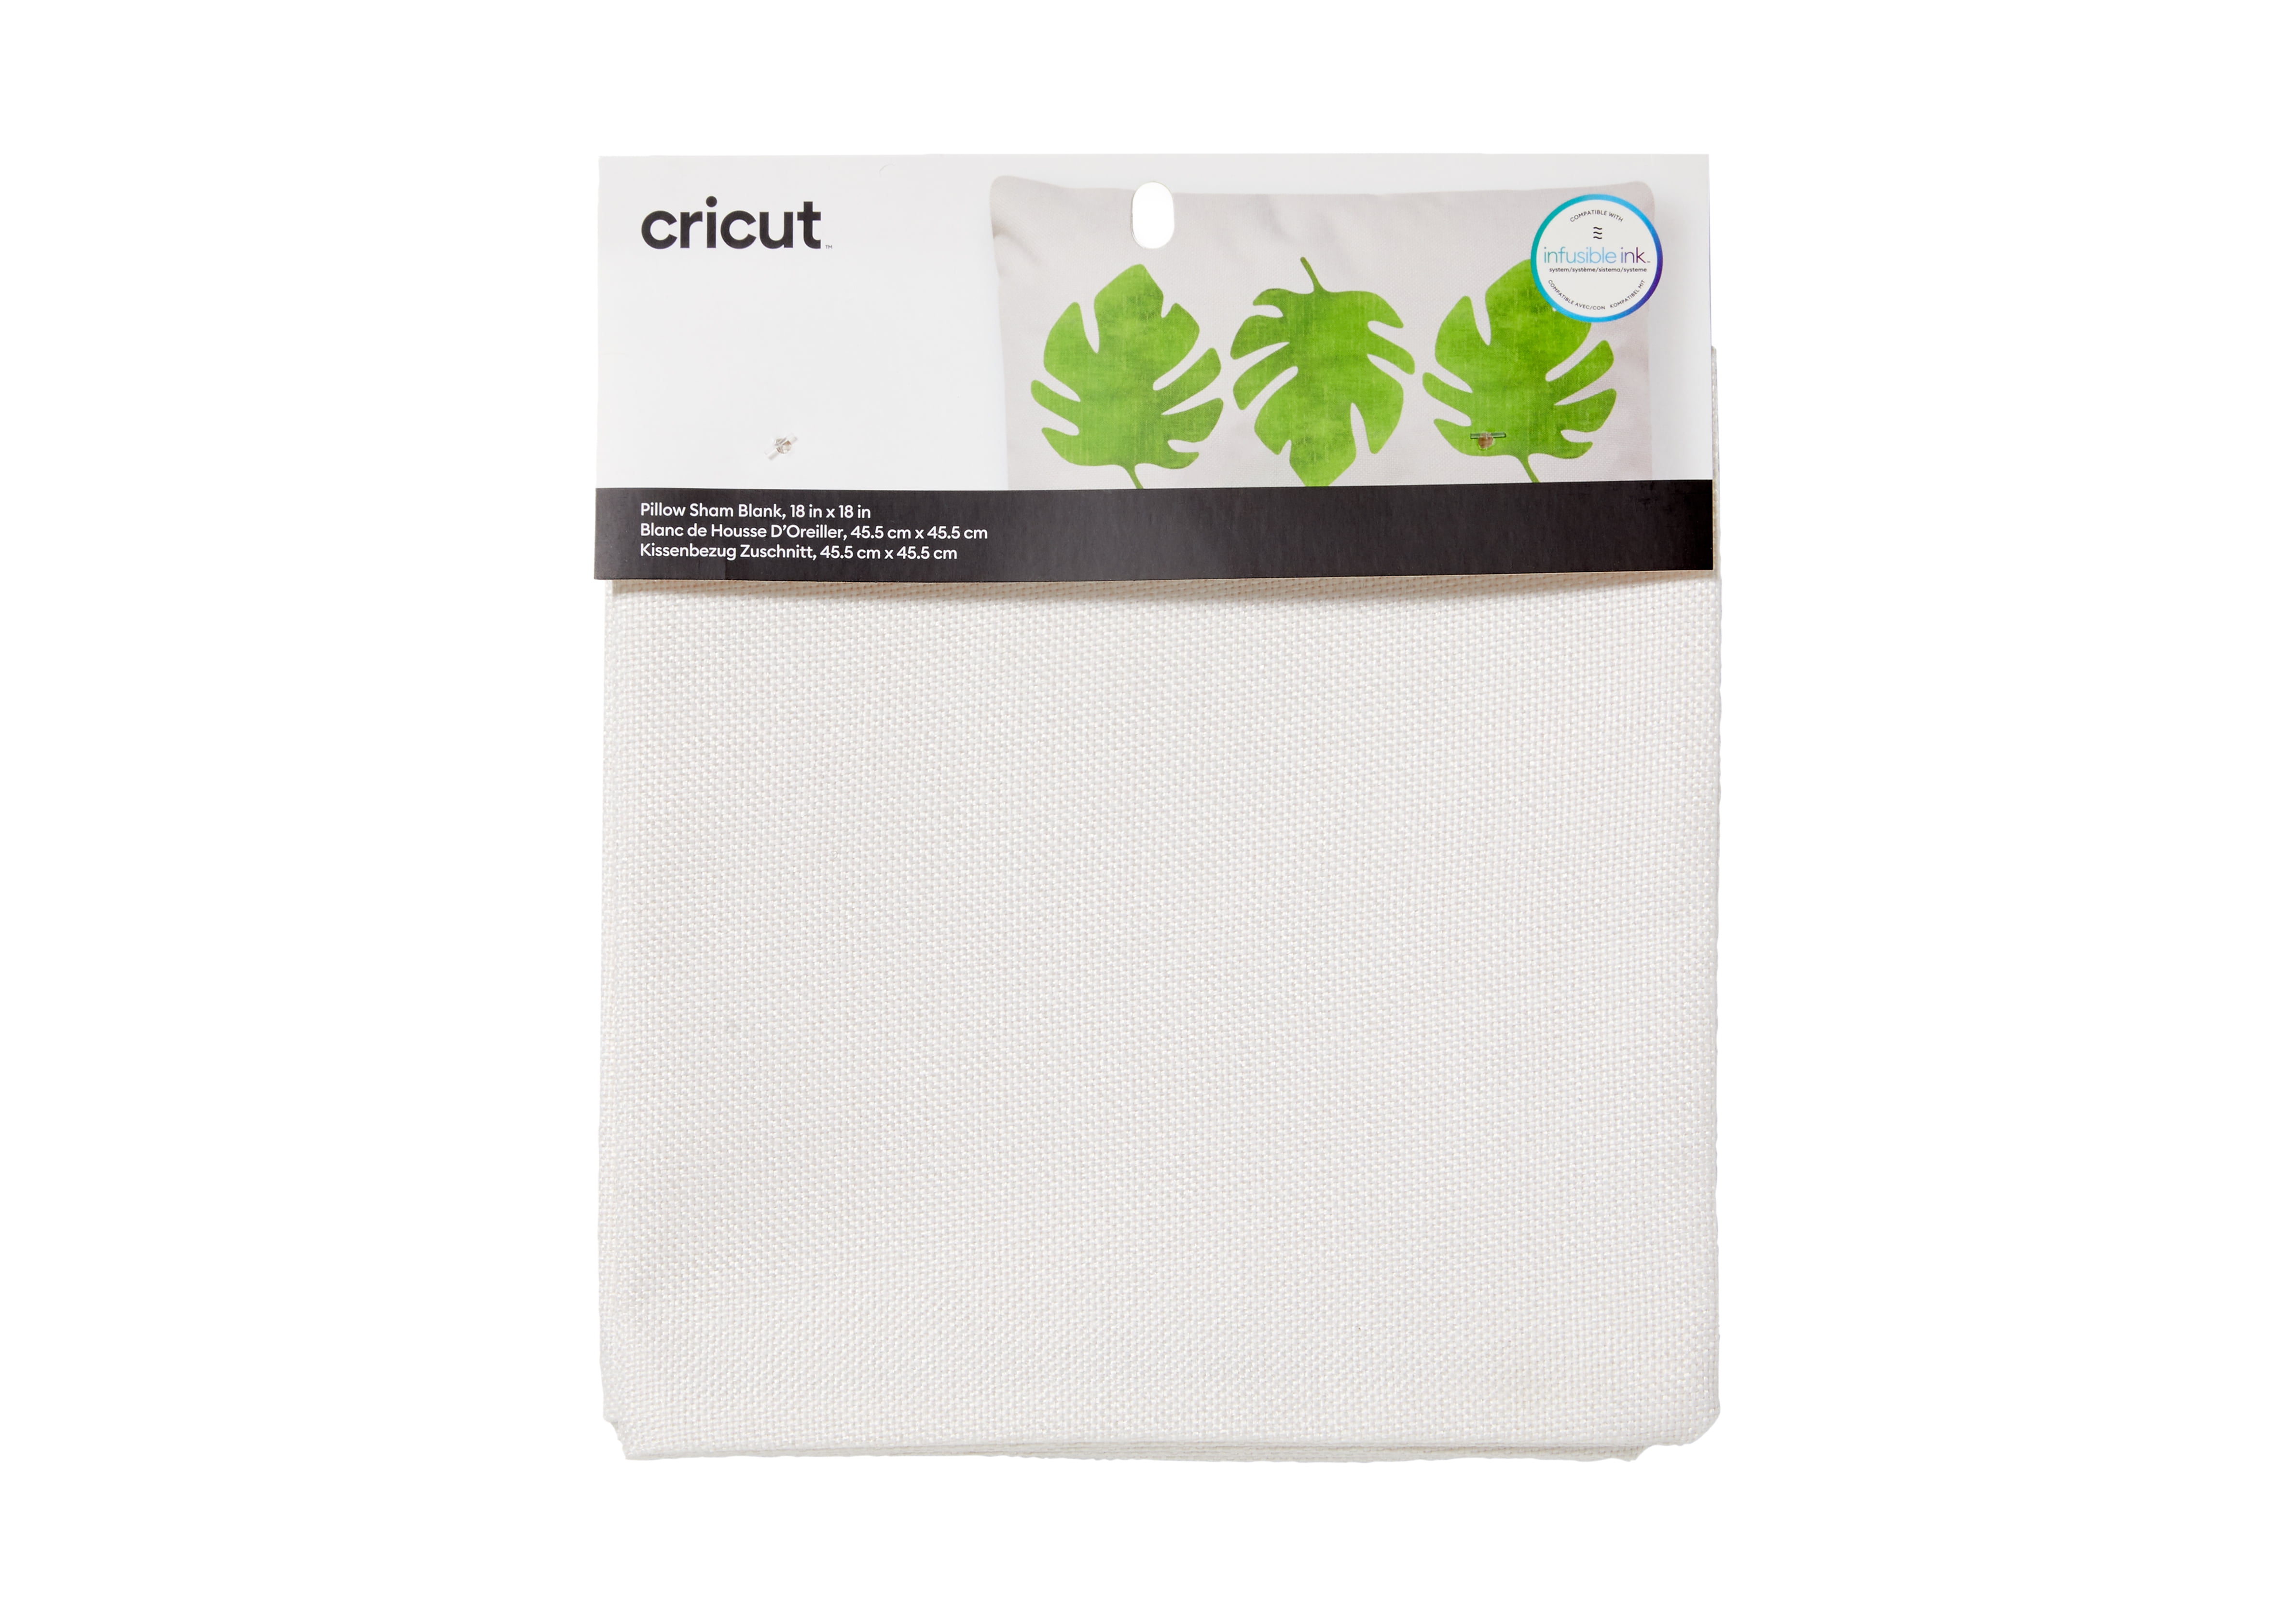 Cricut Pillow Cover Blank, Cream